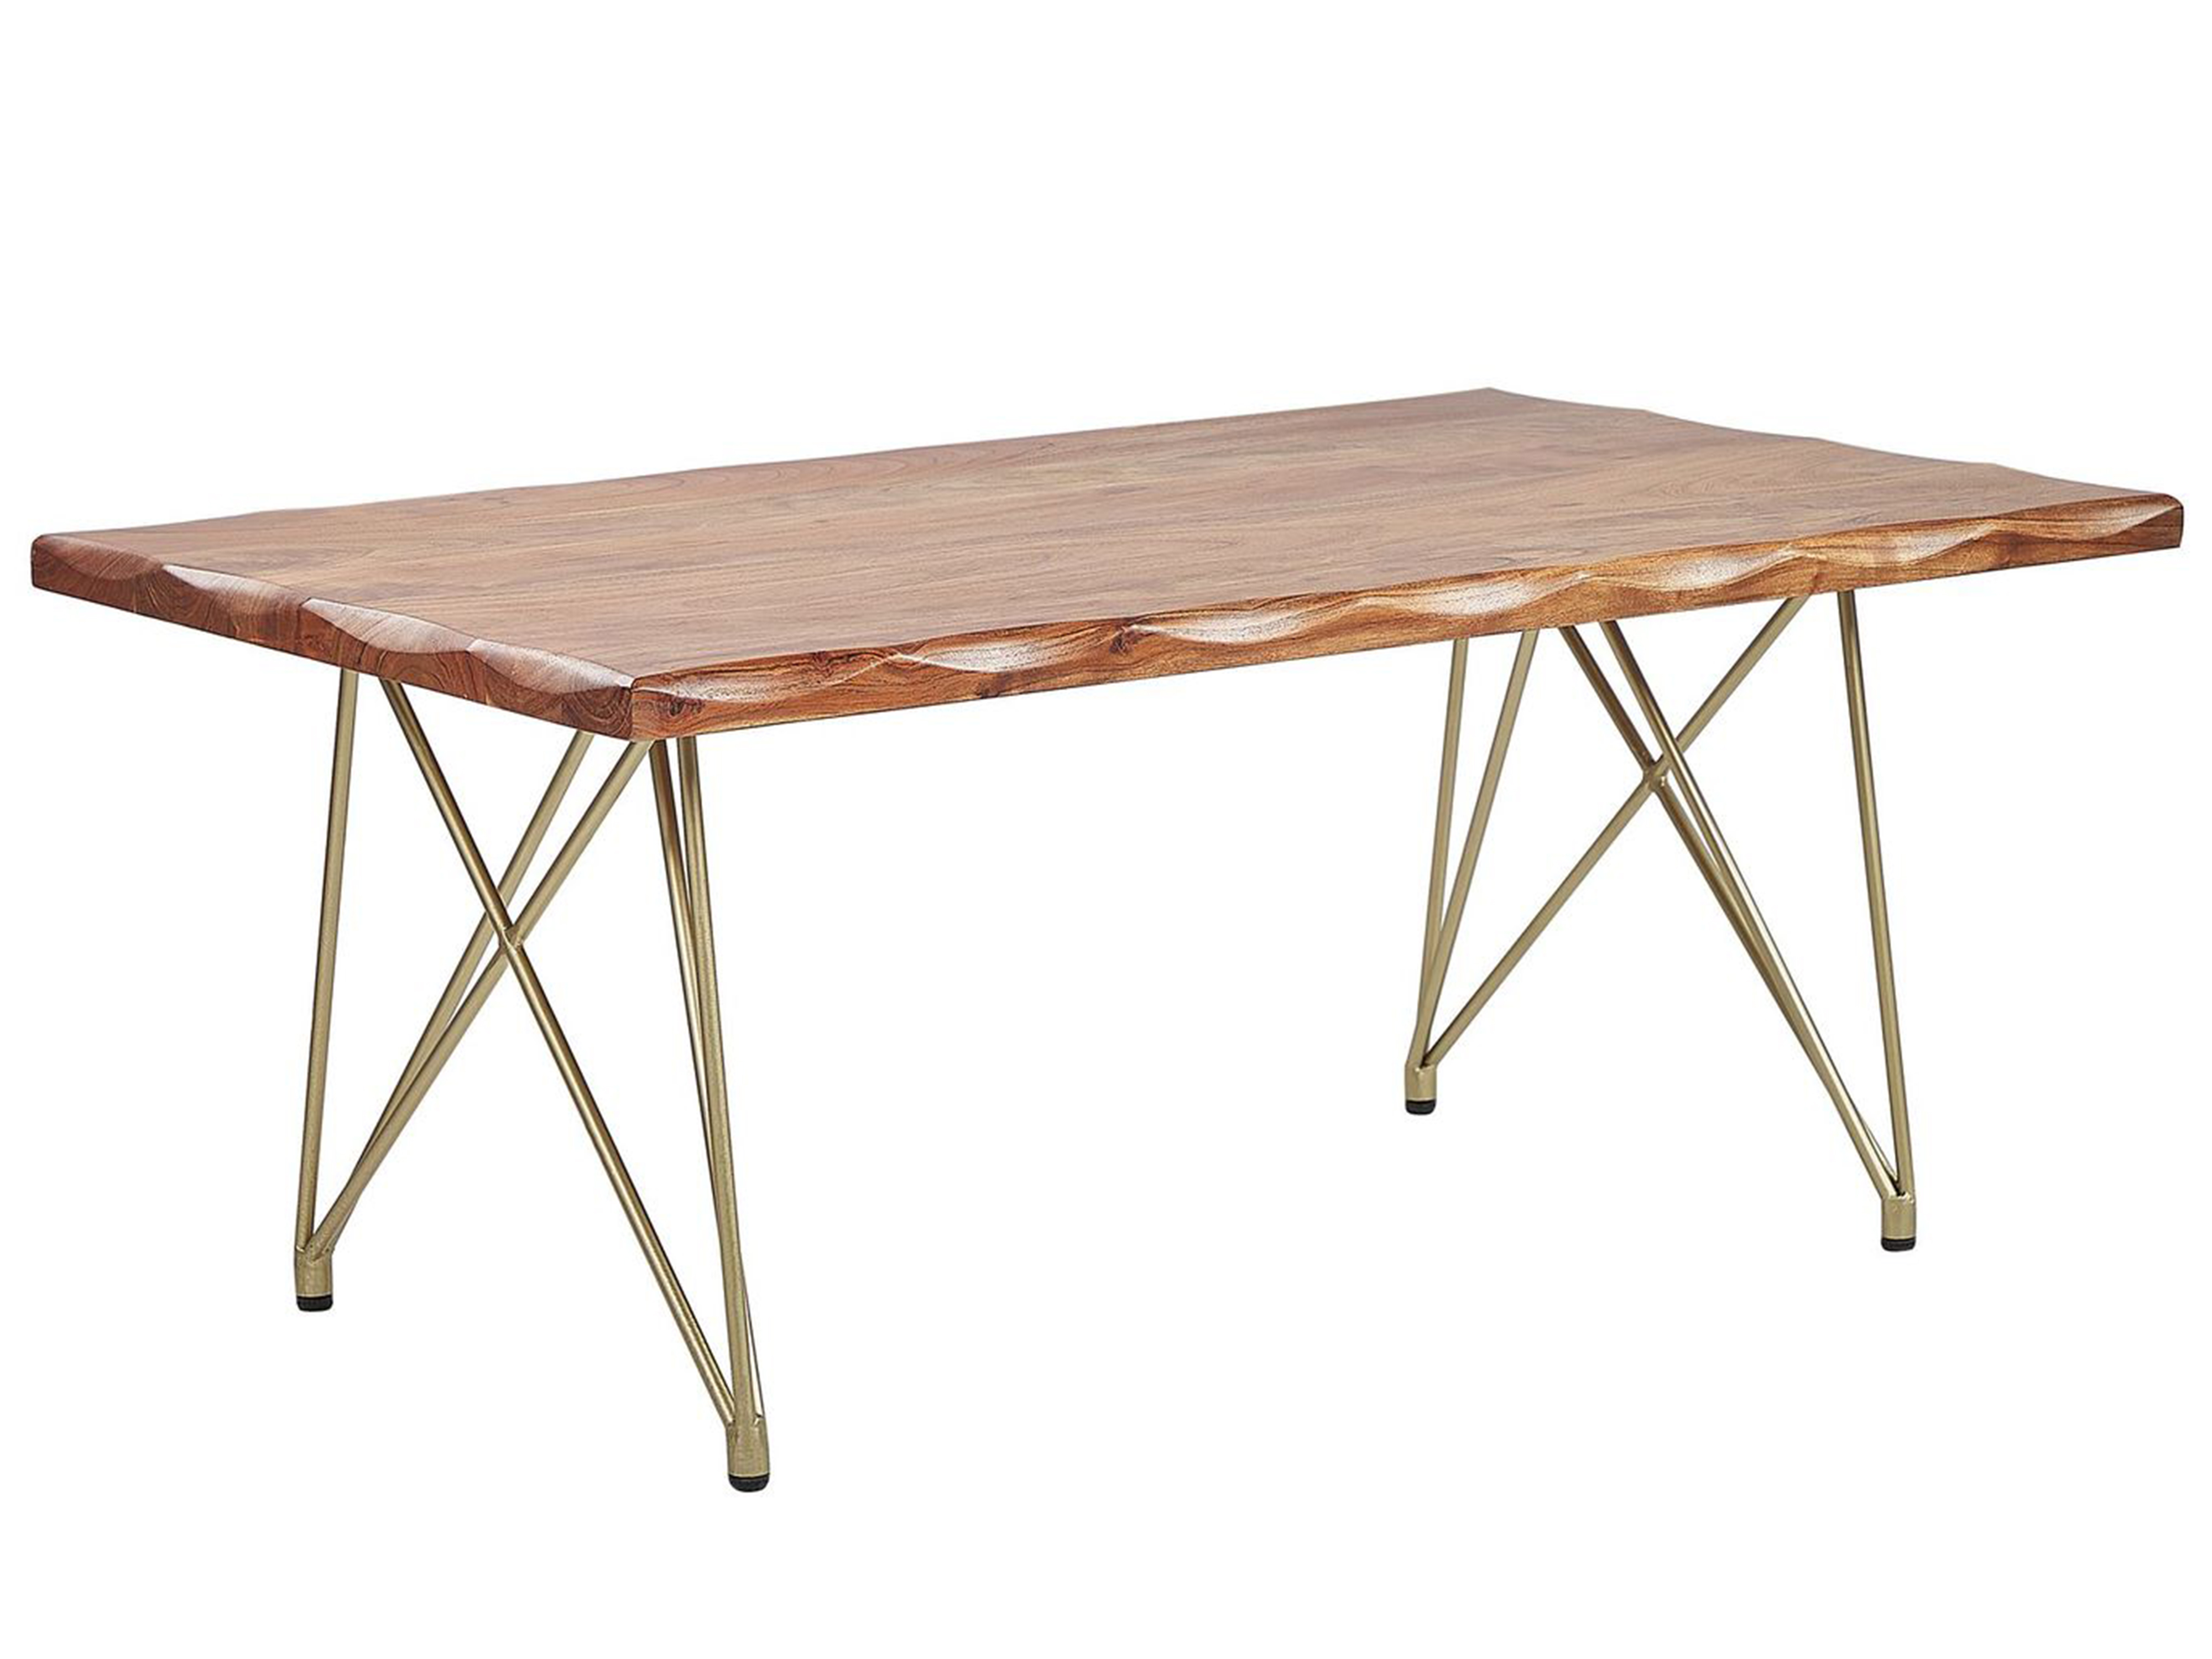 Tavolino legno d'acacia naturale e oro 118 x 70 cm RALEY